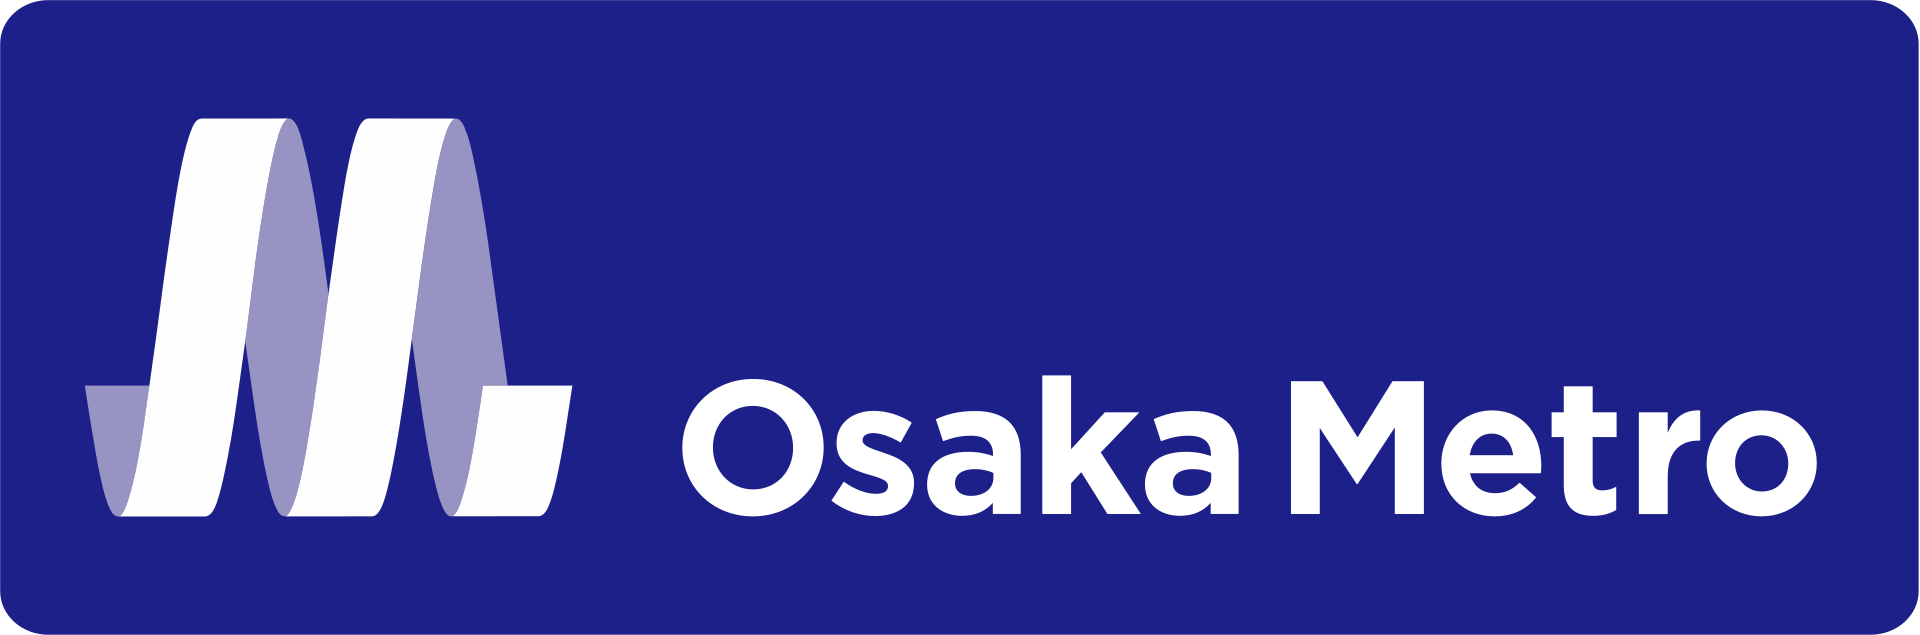 Osaka_Metro_logo_3.svg.png